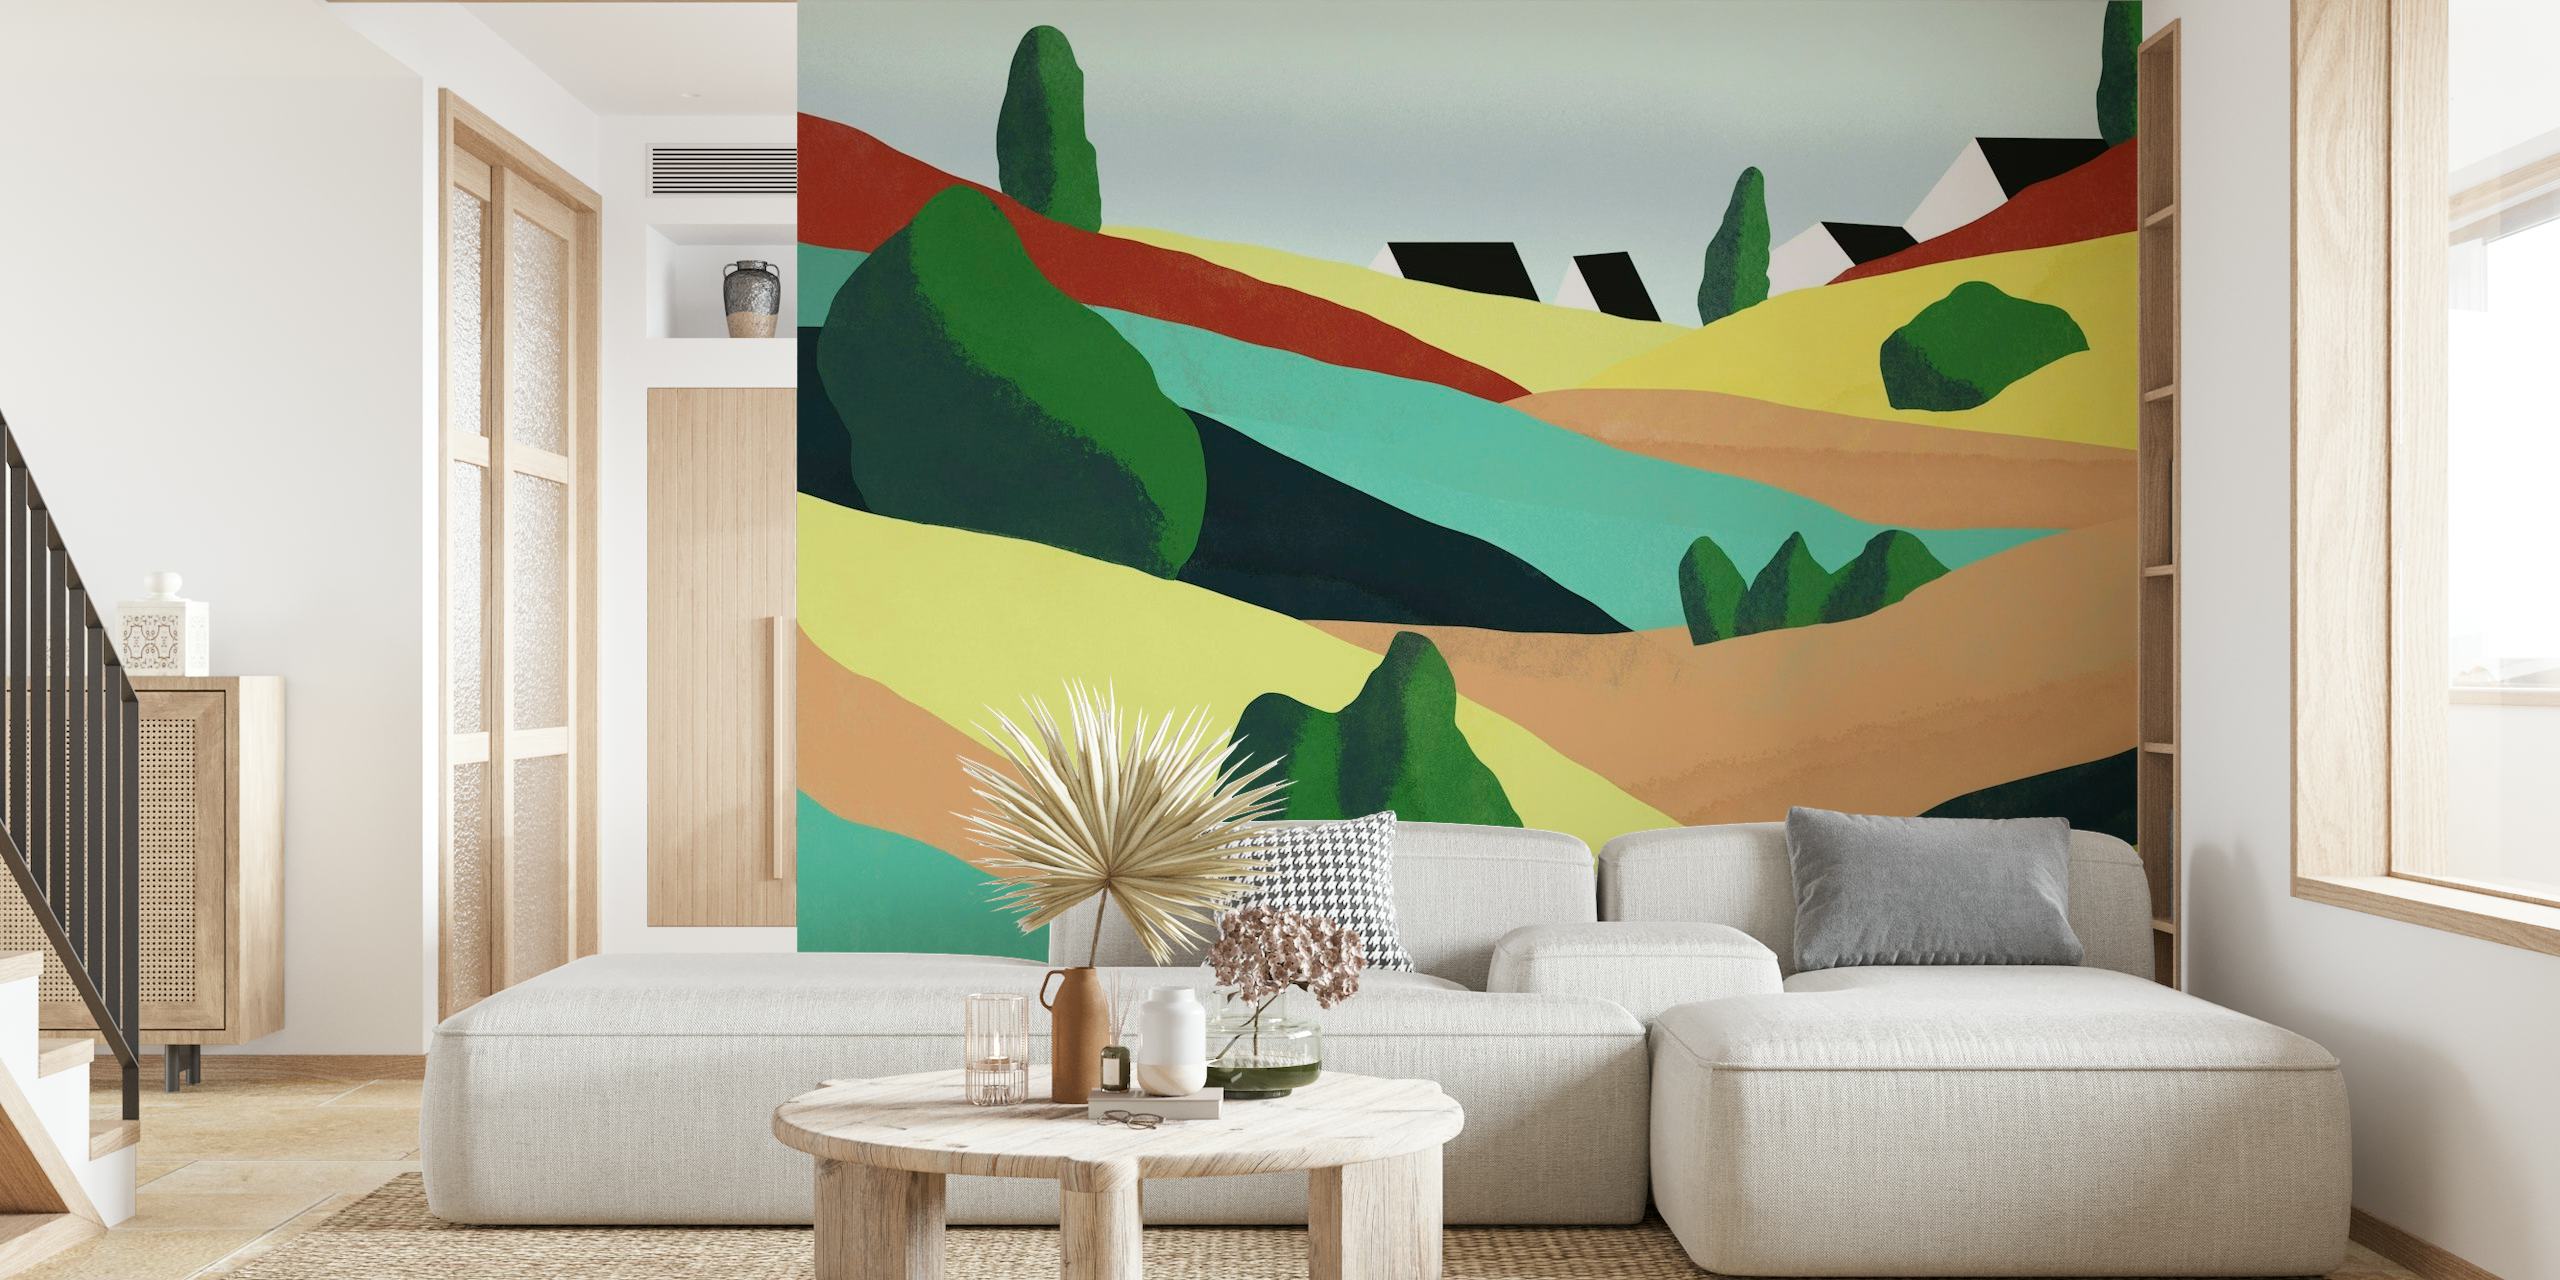 Abstraktes Wandbild mit sanften Hügeln und farbenfroher Cartoon-ähnlicher Landschaft